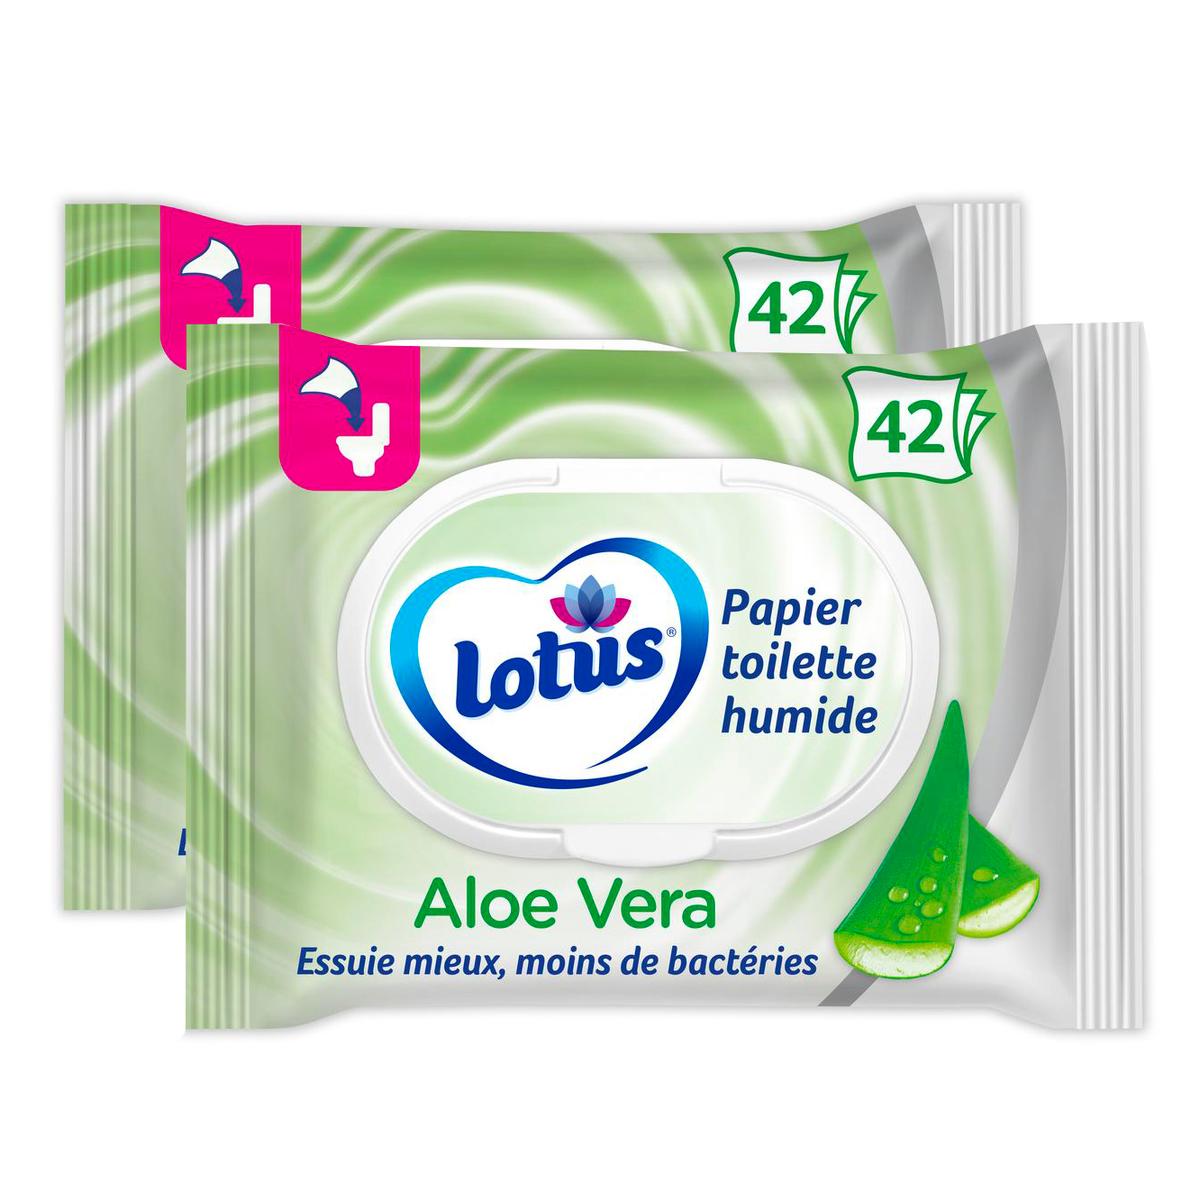 Acheter Promotion Lotus Lingette Papier toilette humide Aloe Douceur